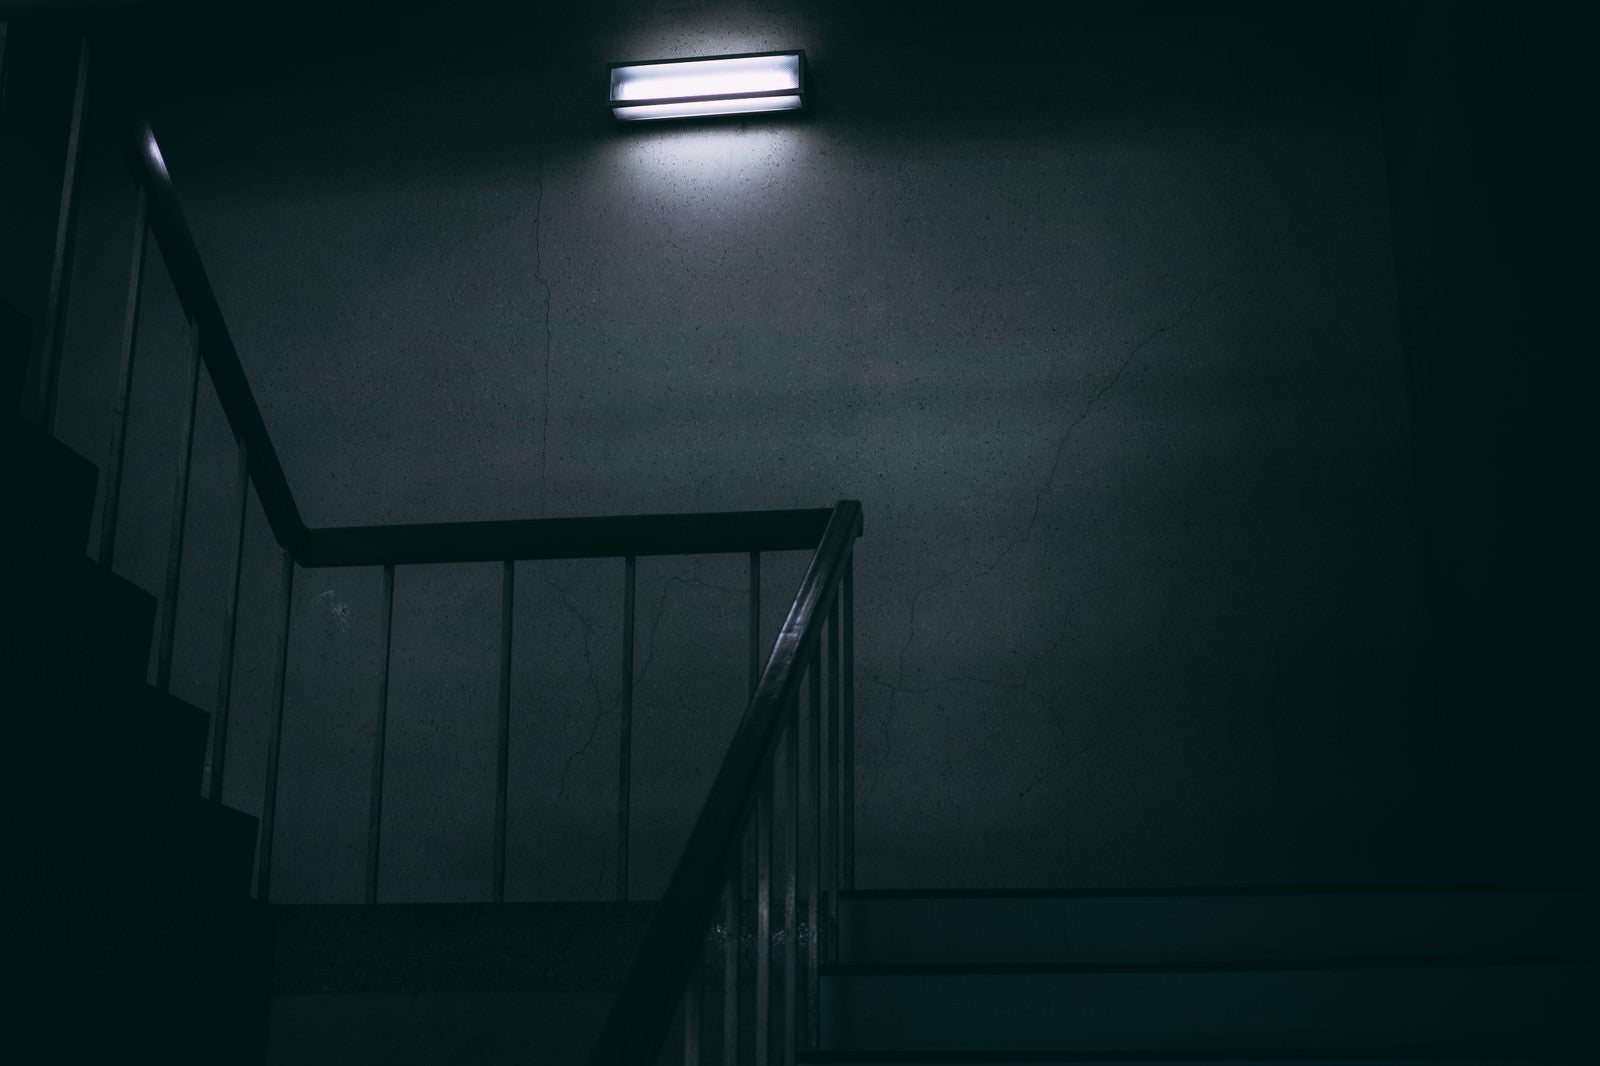 「一人称視点で眺める仄暗い階段」の写真